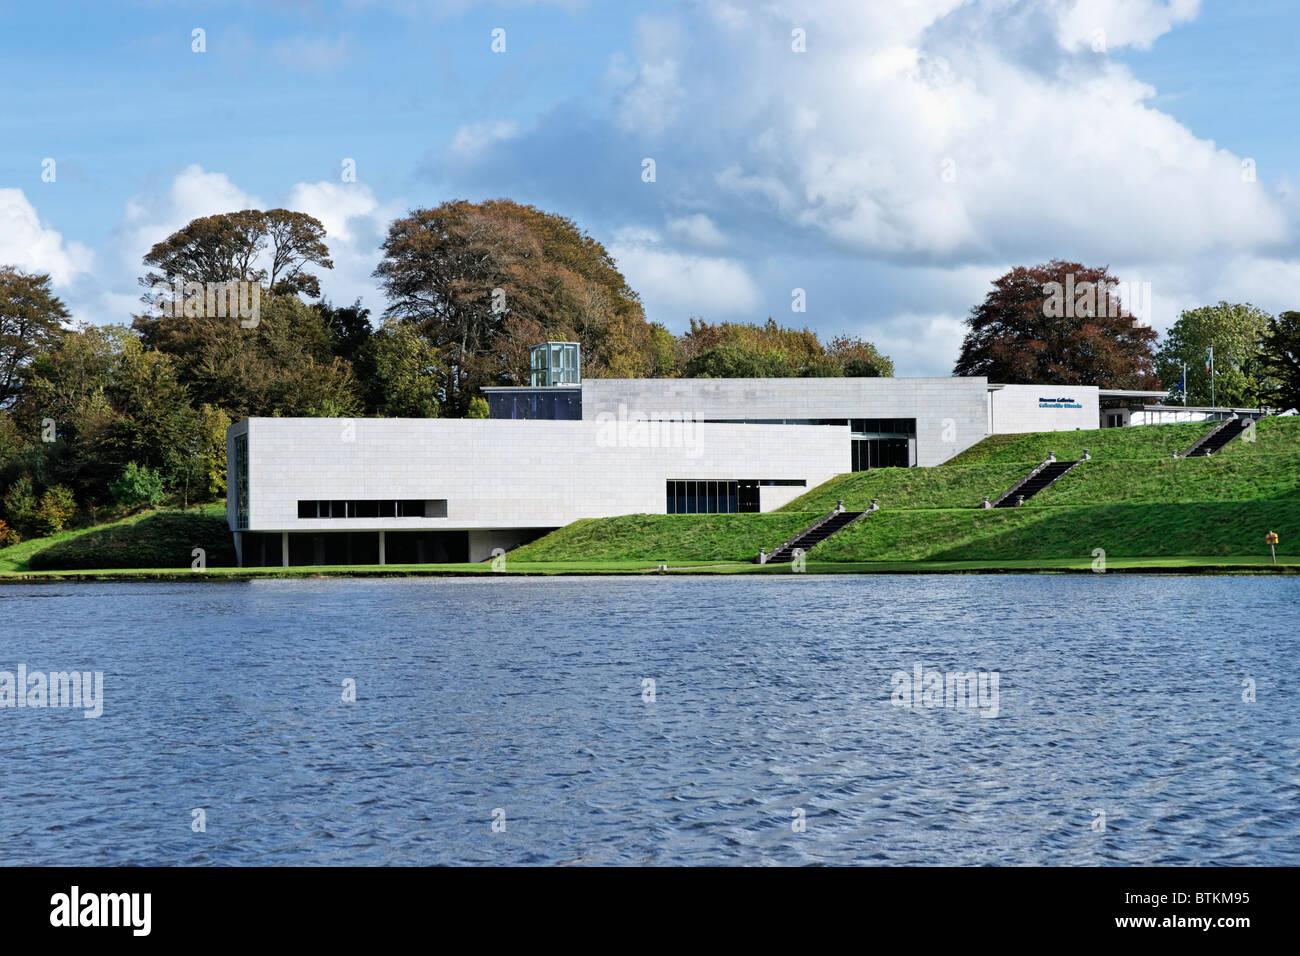 Musée national d'Irlande - La vie à la campagne. Turlough Park, Castlebar, Comté de Mayo, Irlande, Connaught. Banque D'Images